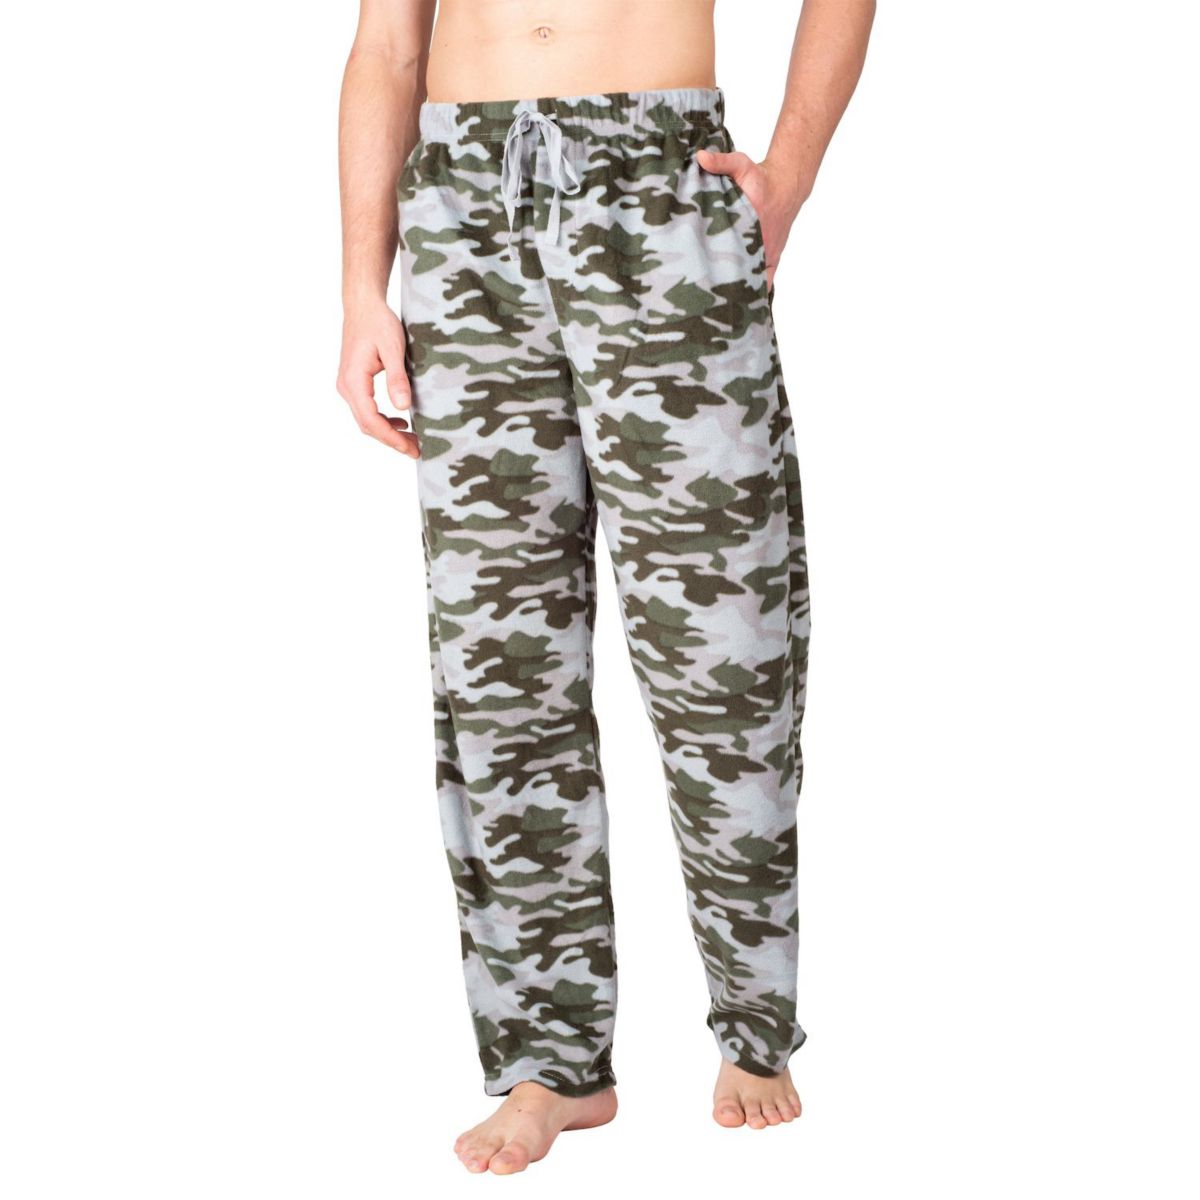 Мужские флисовые пижамные штаны SLEEPHHERO с камуфляжным принтом SLEEPHERO